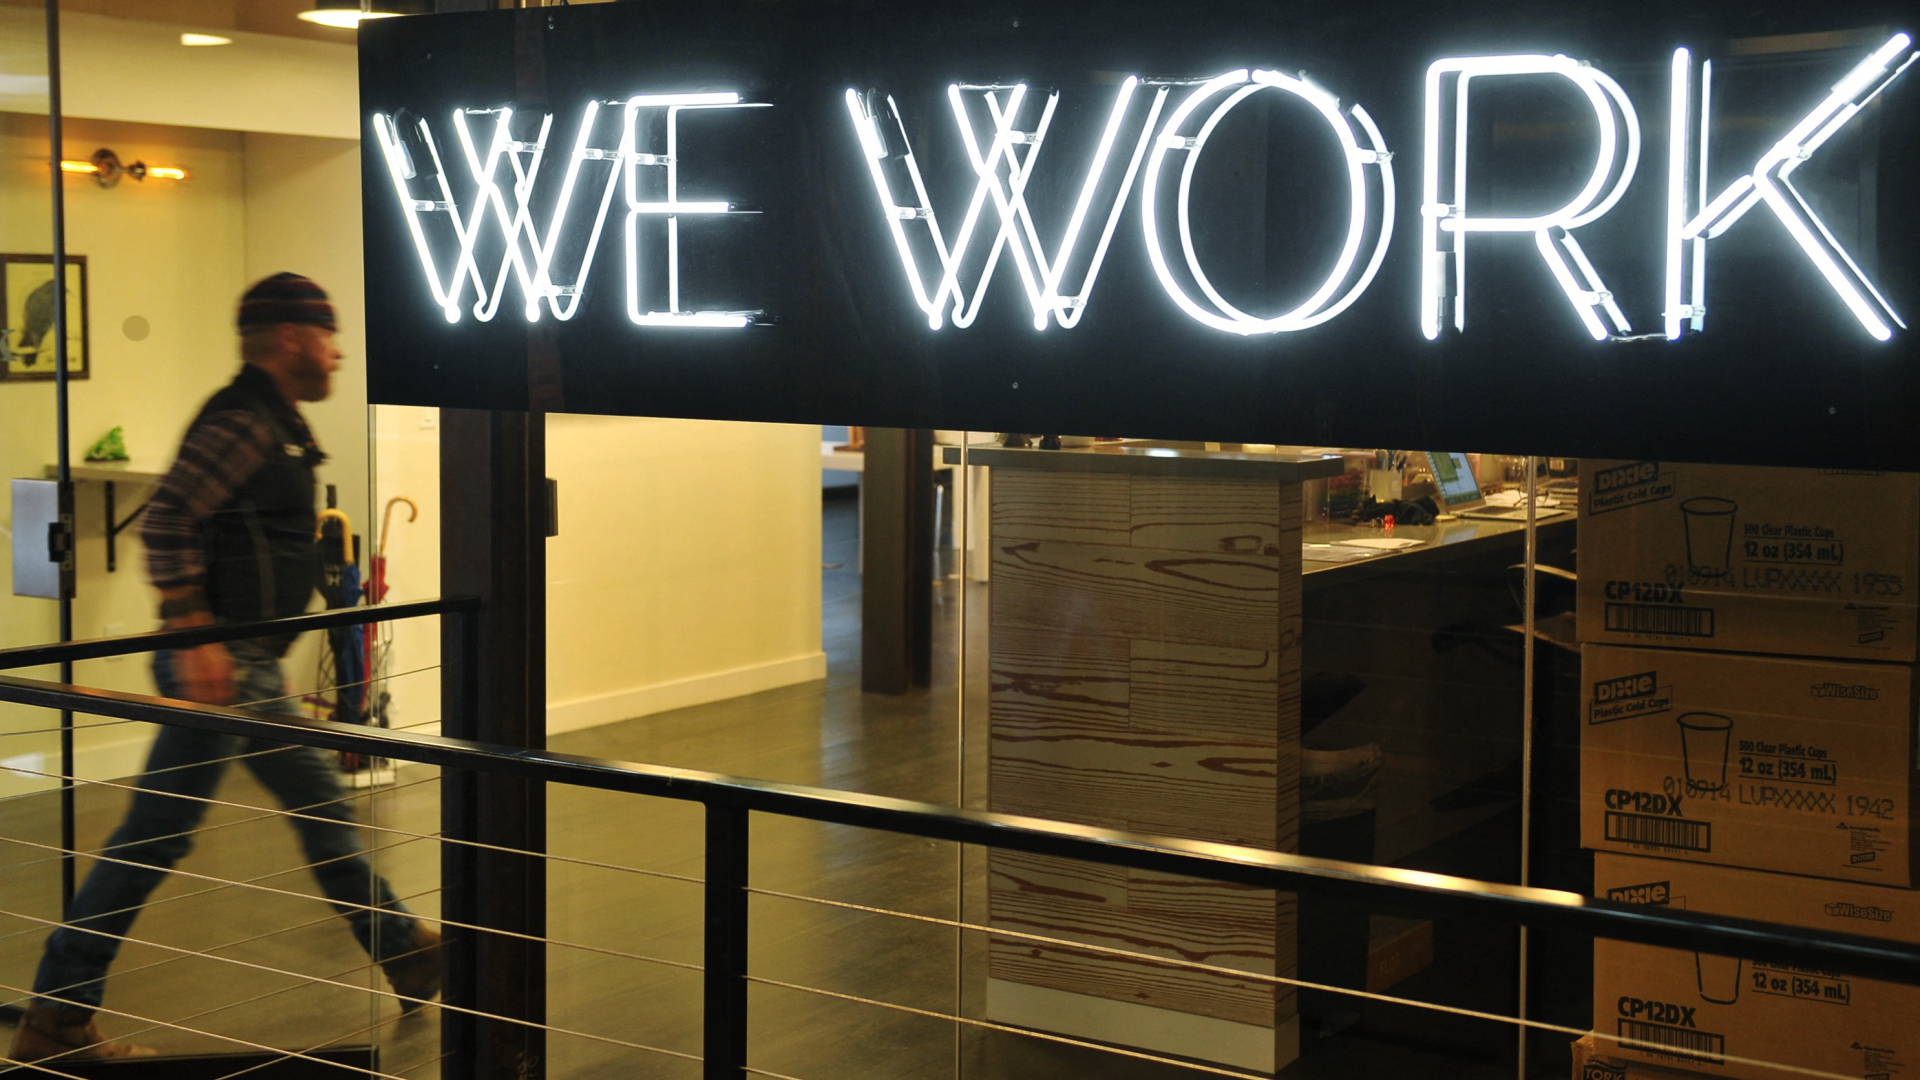 Lichtinstallation "We Work" am Eingang eines Coworking Space | AFP